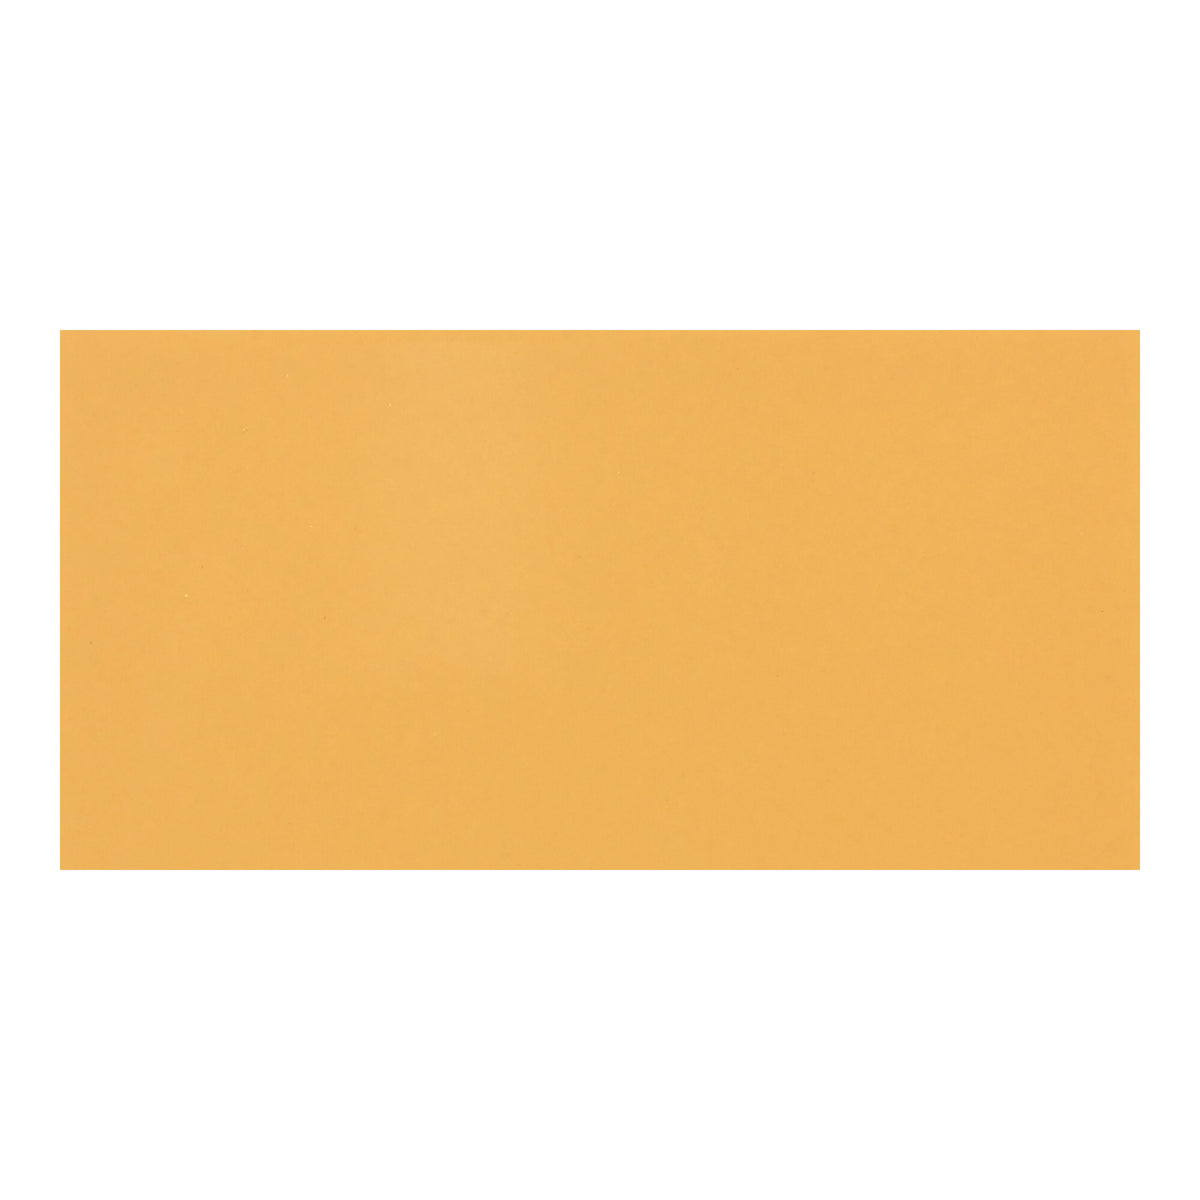 Daltile - Color Wheel Linear - 4 in. x 8 in. Glazed Ceramic Wall Tile - Mustard